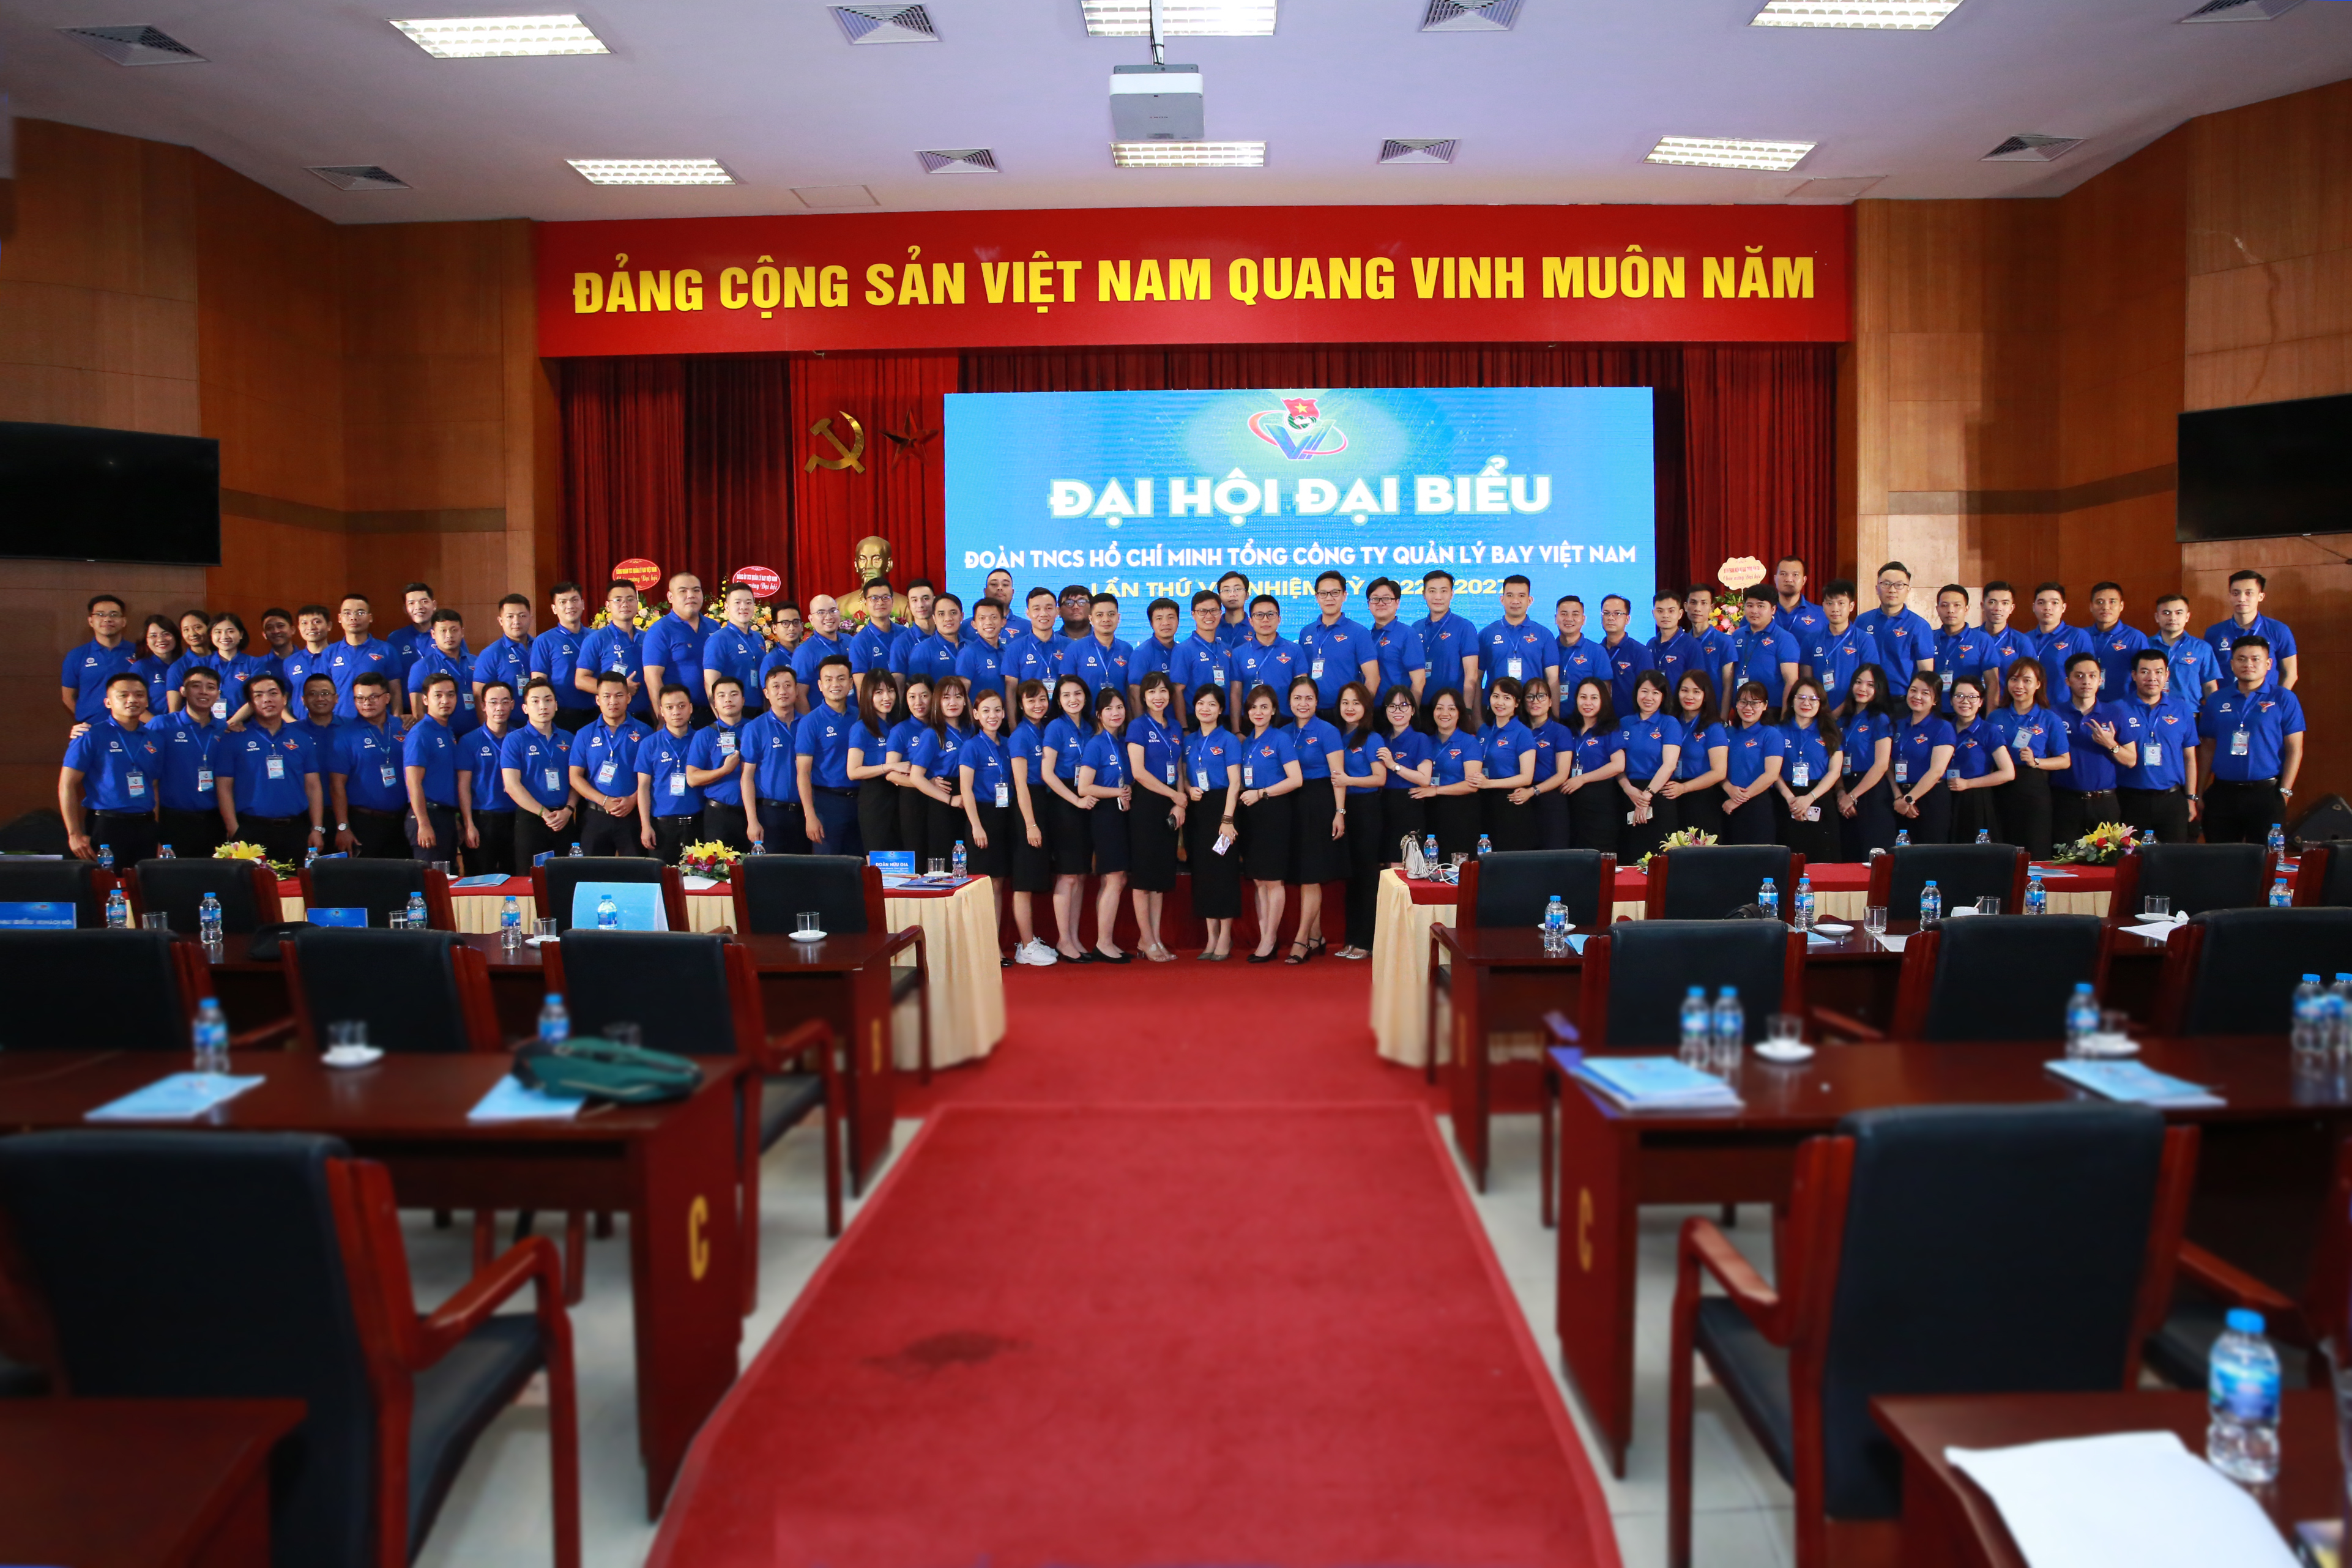 Quá trình xây dựng và phát triển của Đoàn Thanh niên Tổng công ty Quản lý bay Việt Nam